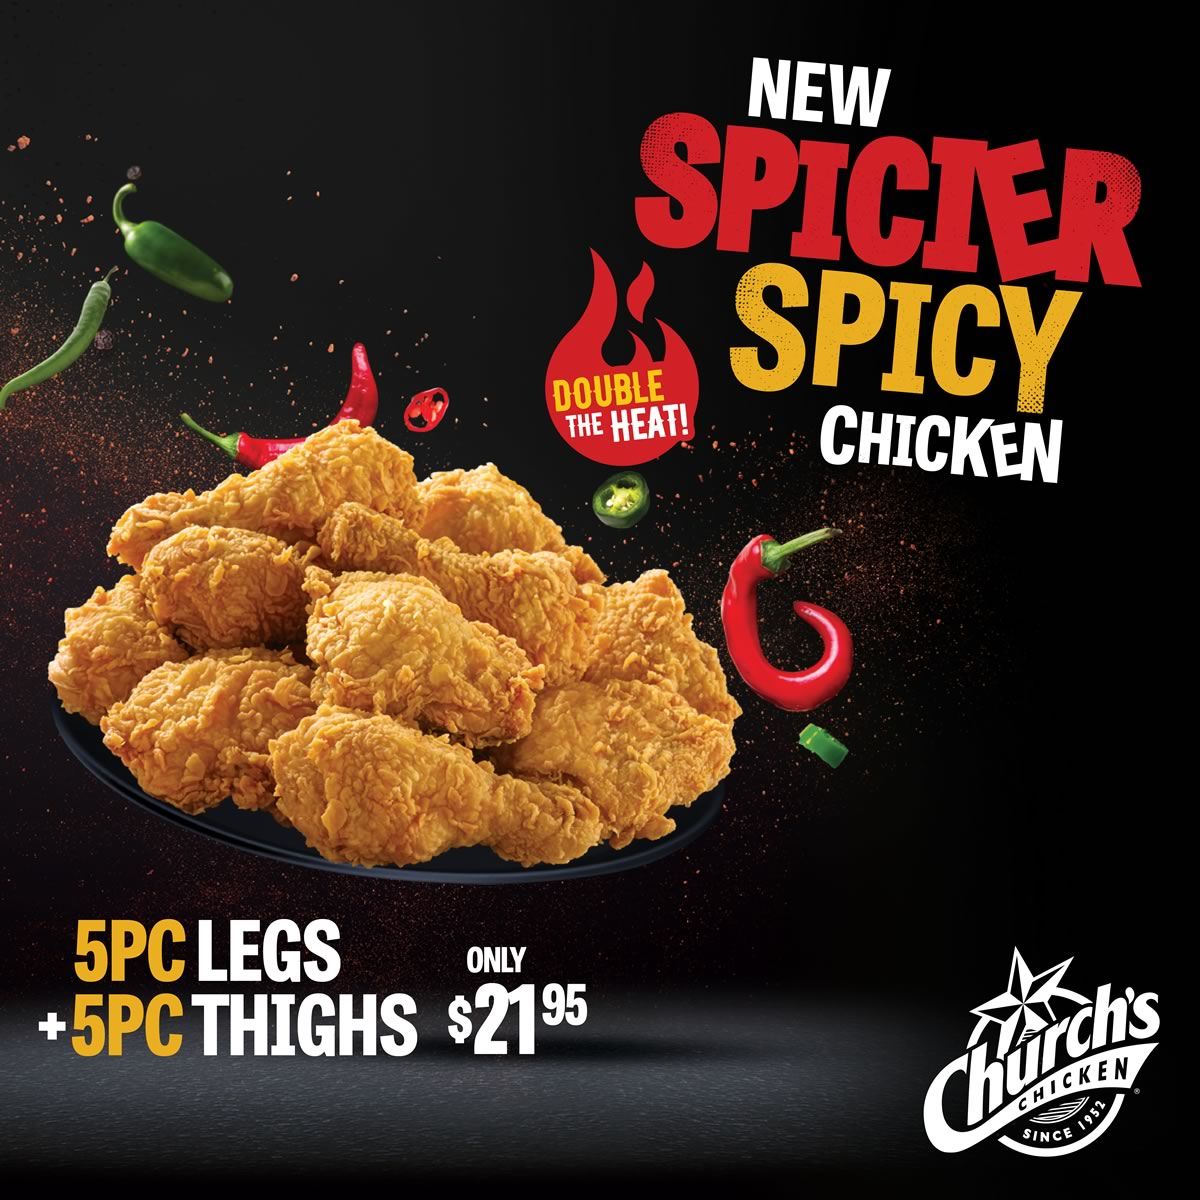 Church's Chicken Canada Spicer Spicy Chicken - Foodgressing